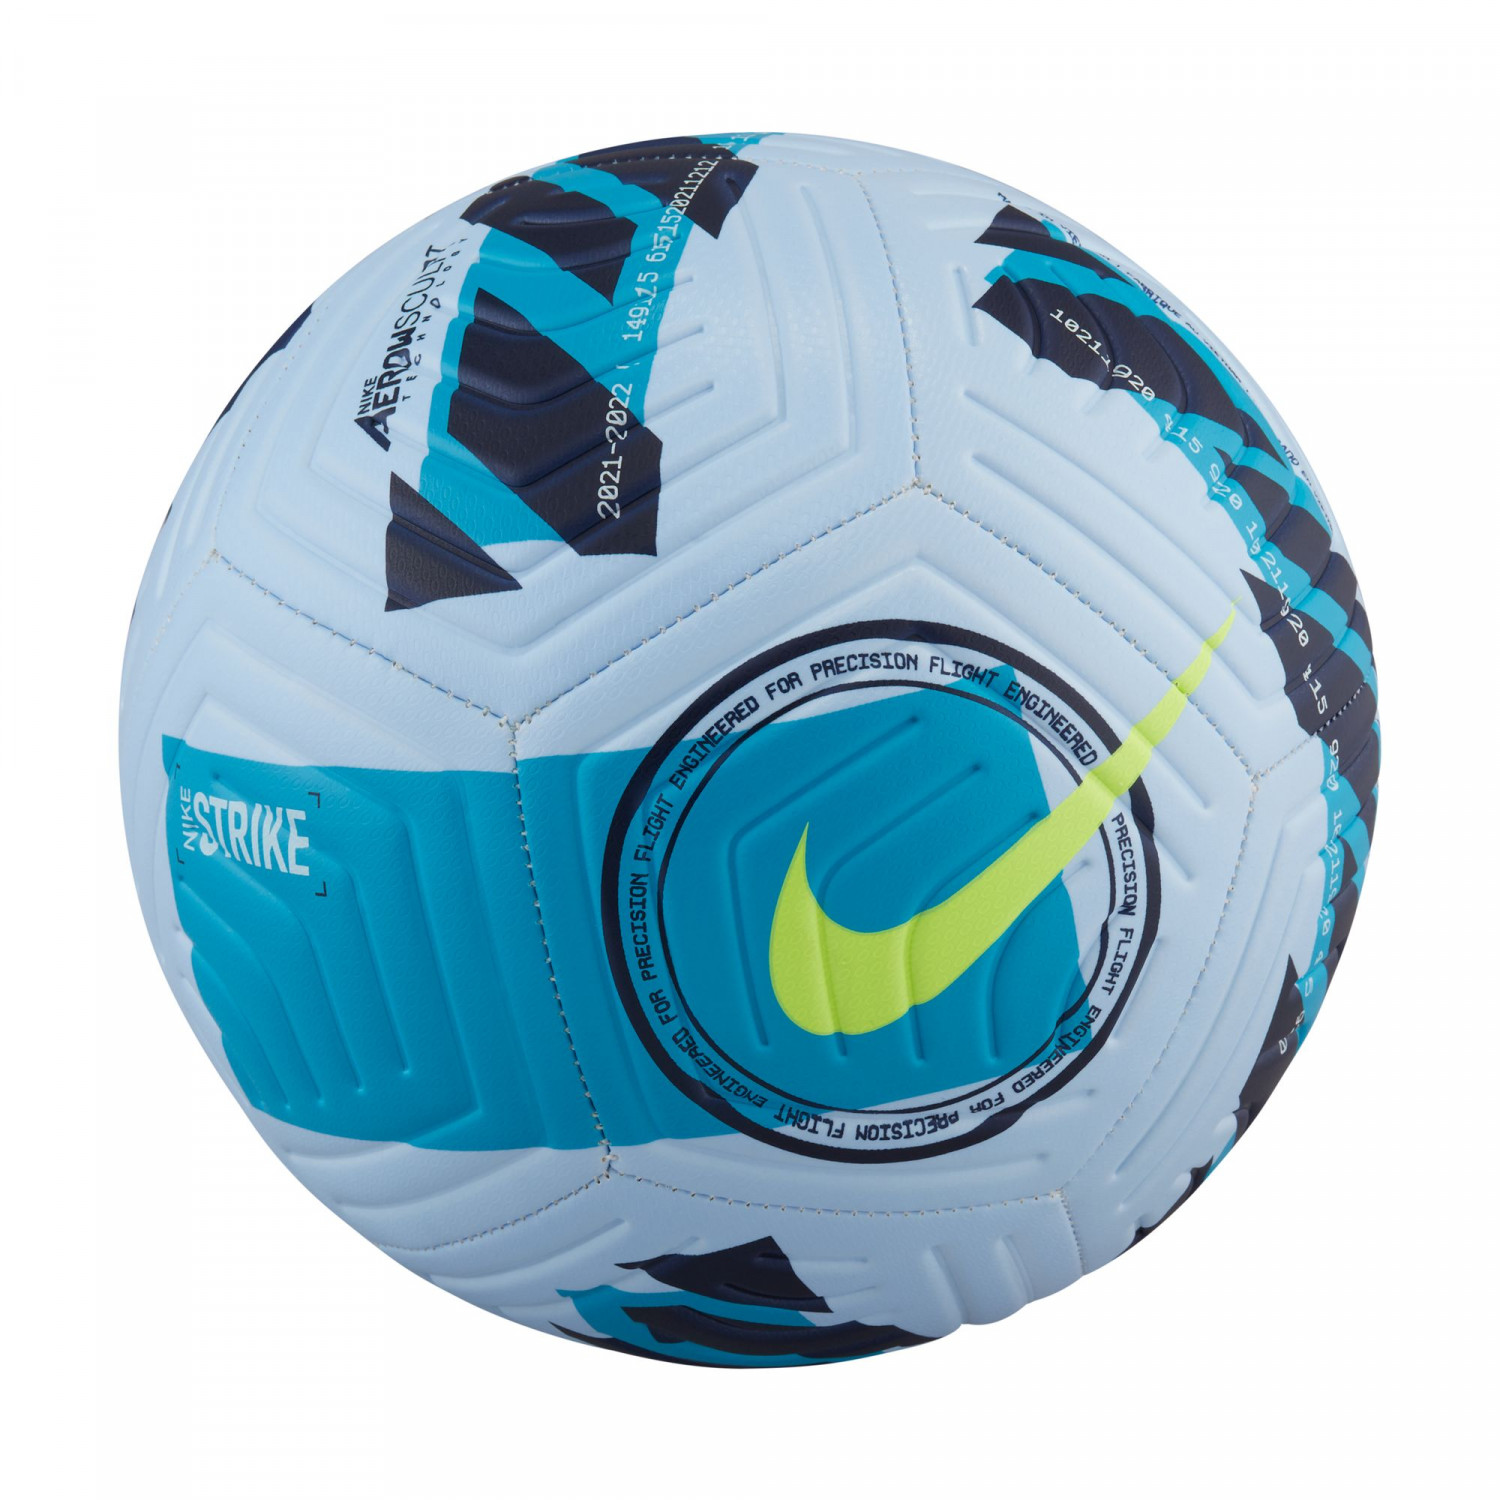 Ballon Nike Strike blanc bleu sur